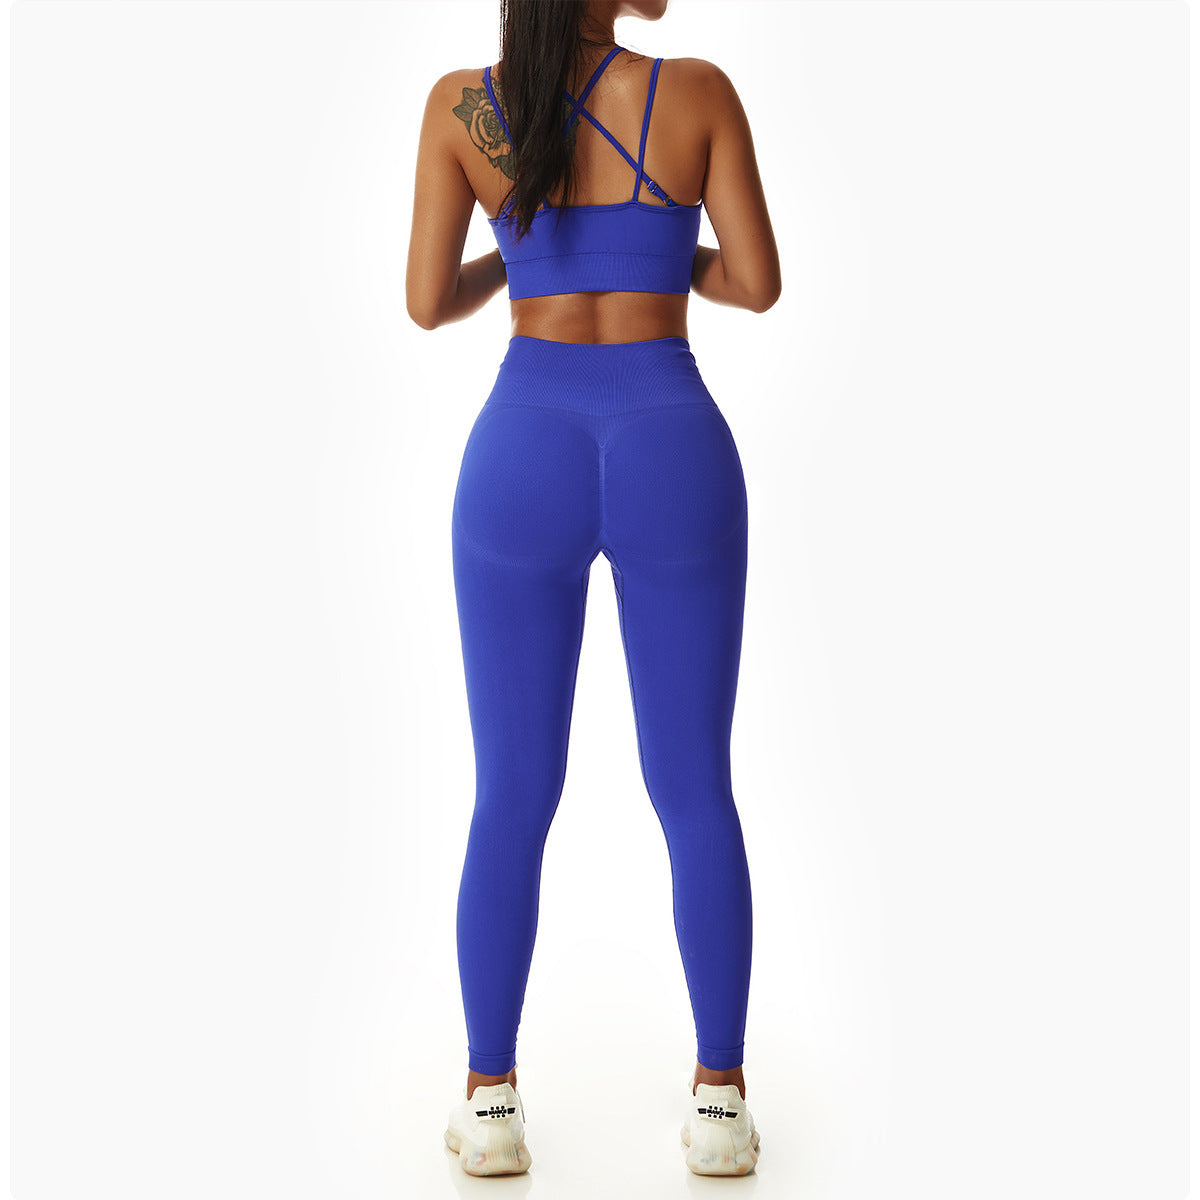 Seamless butt lift workout legging